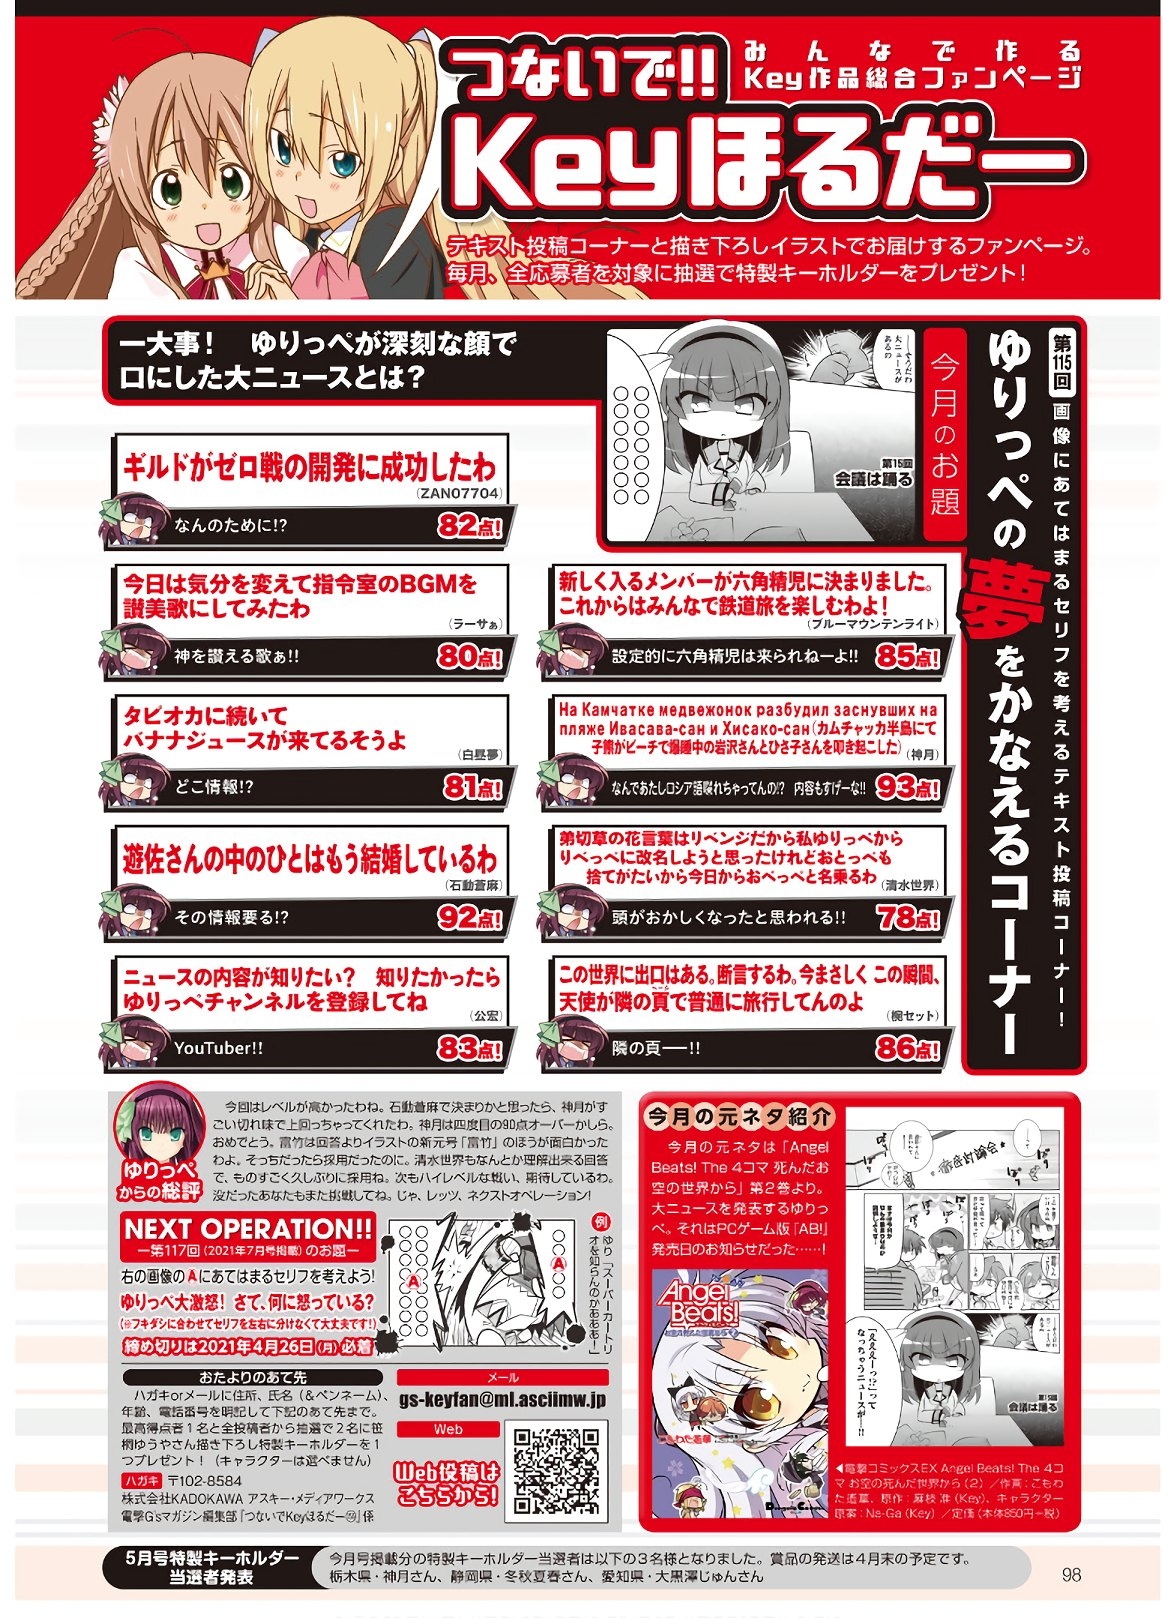 Dengeki G's Magazine #286 - May 2021 95